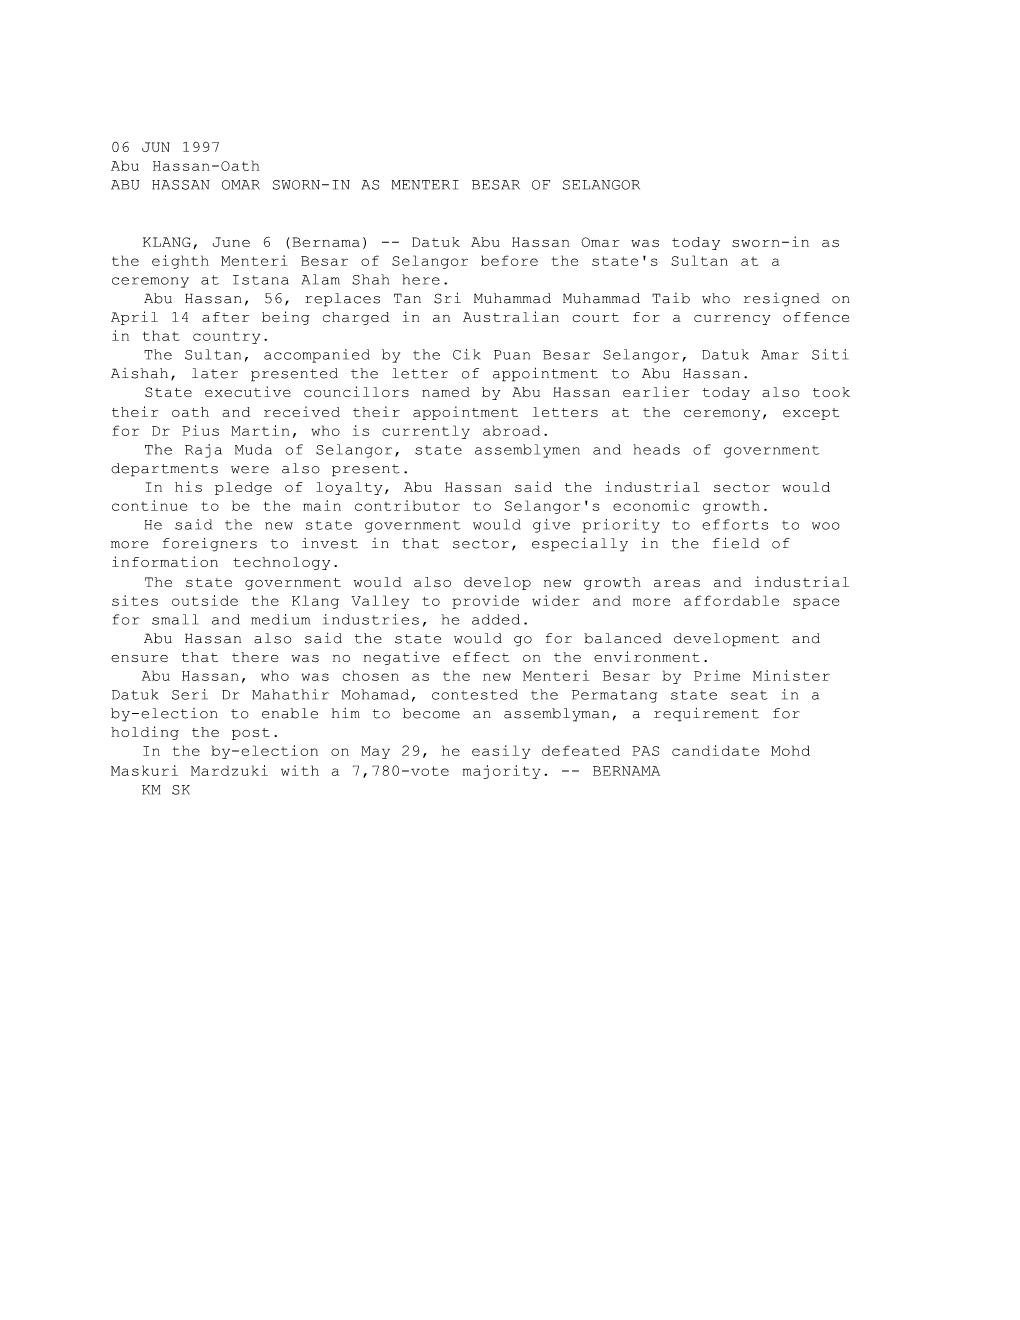 ABU HASSAN OMAR SWORN-IN AS MENTERI BESAR of SELANGOR (Bernama 06/06/1997)